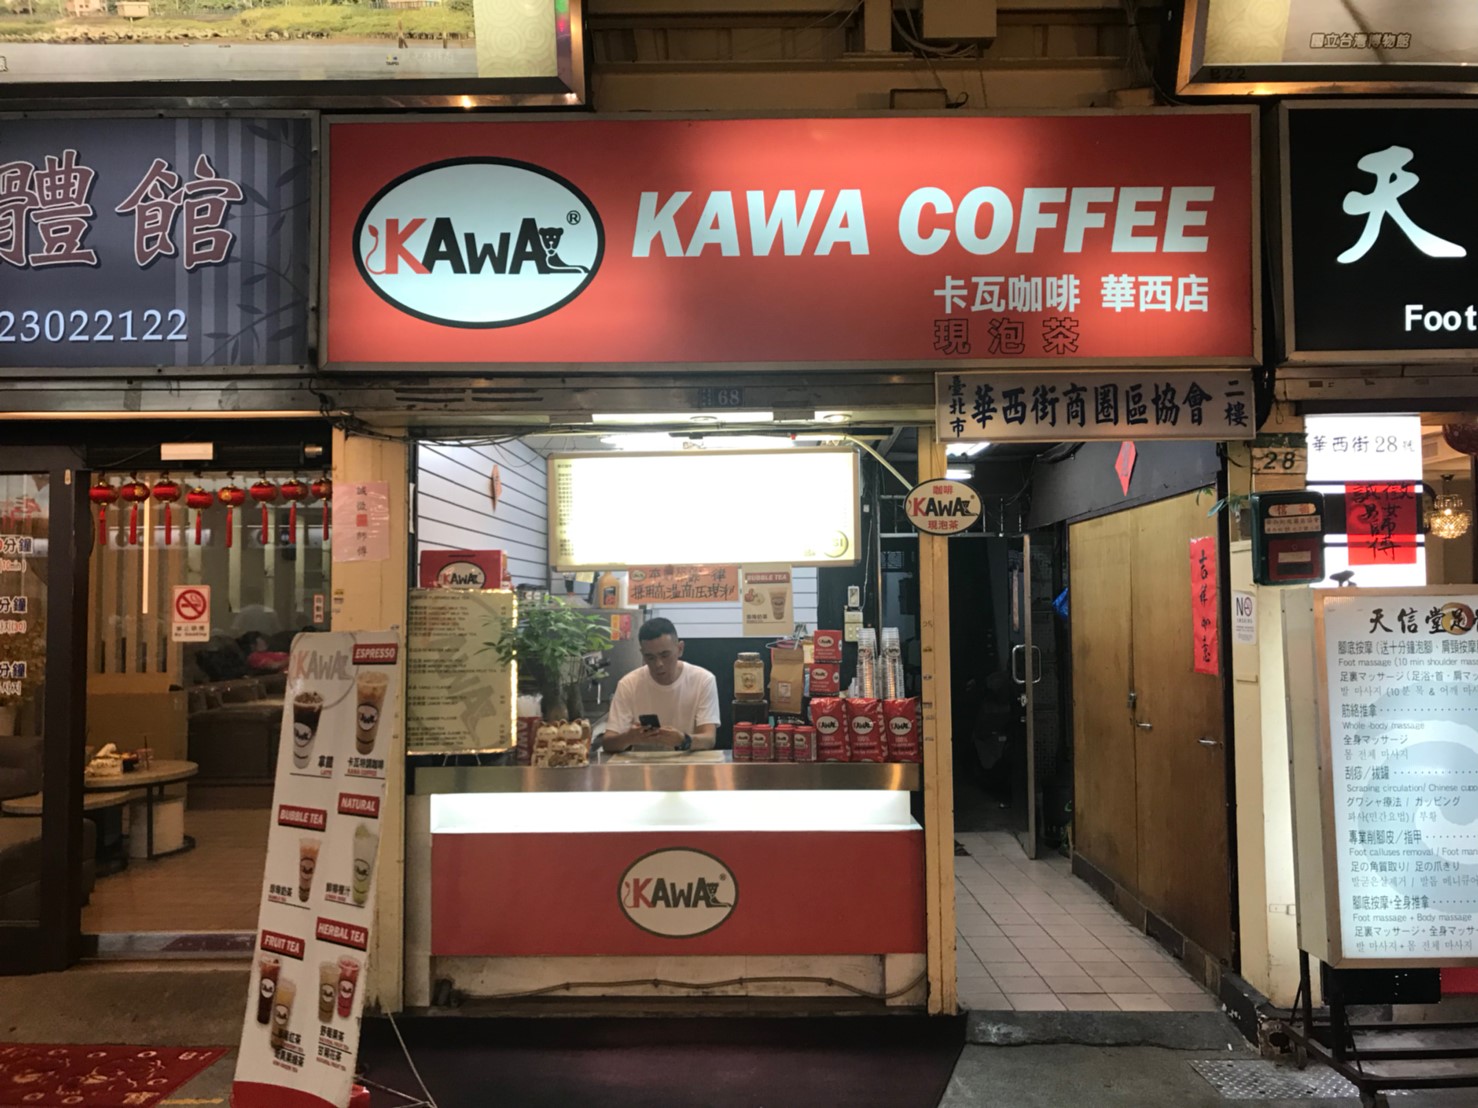 KAWA COFFEE 卡瓦咖啡 華西店